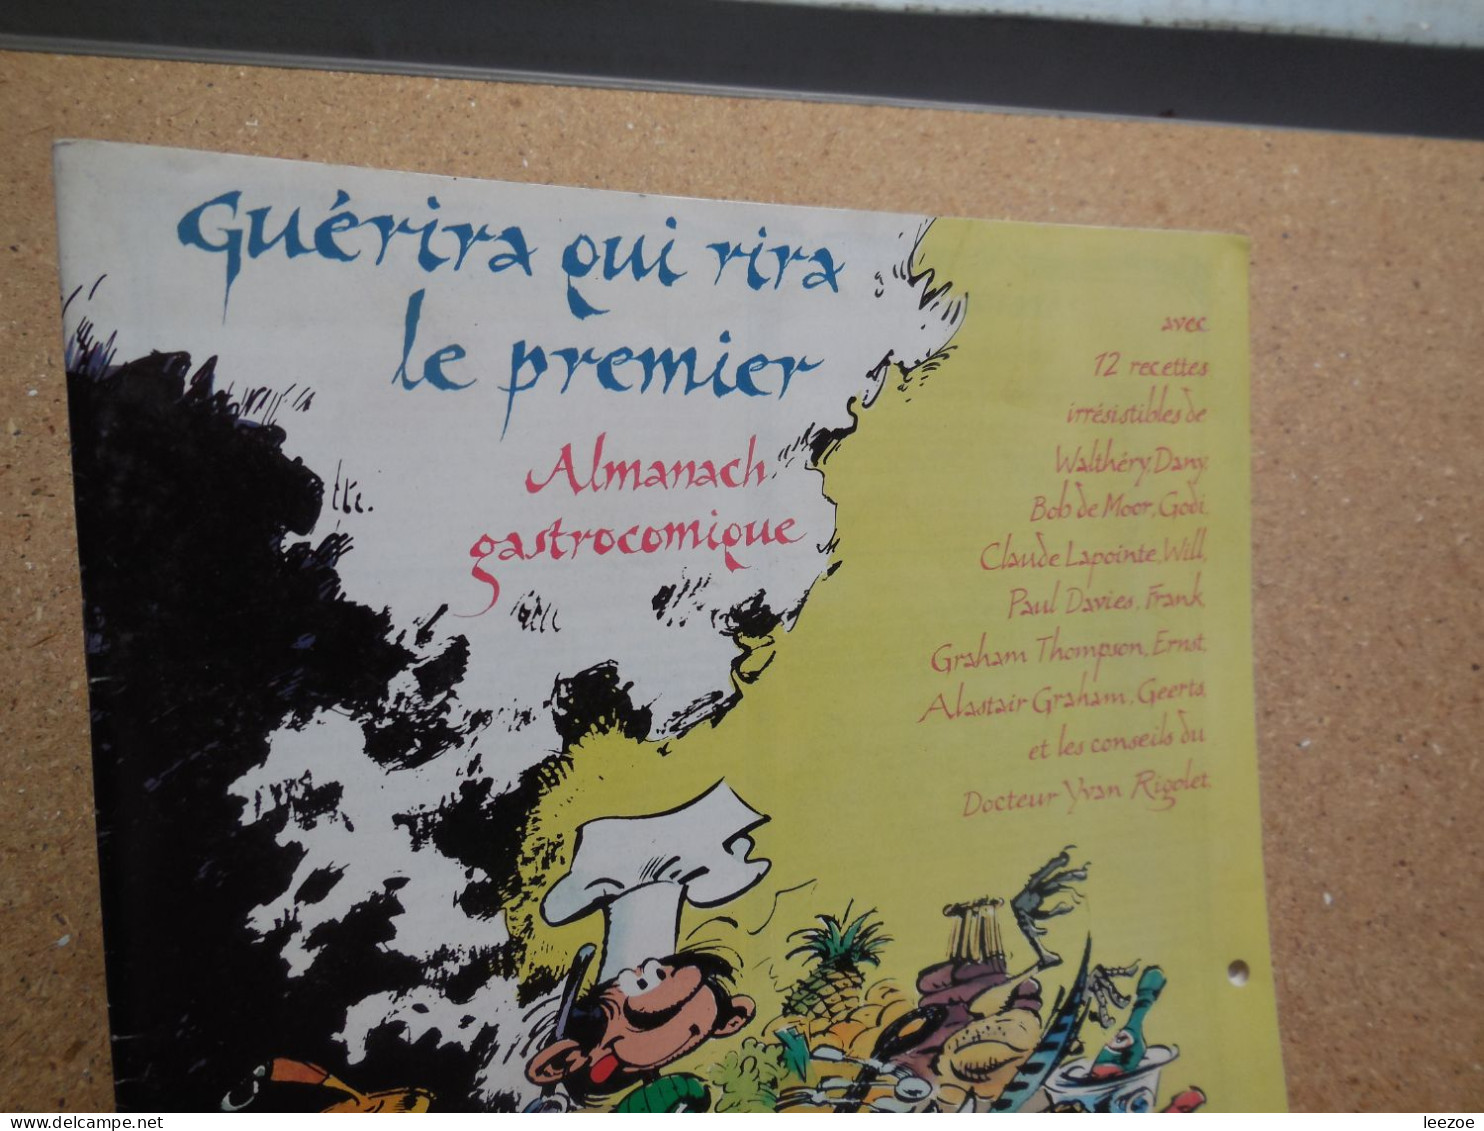 Objets dérivés publicitaire Almanach Gastrocomique couverture FRANQUIN GASTON 1985, Walthéry.Dany et autres.N5